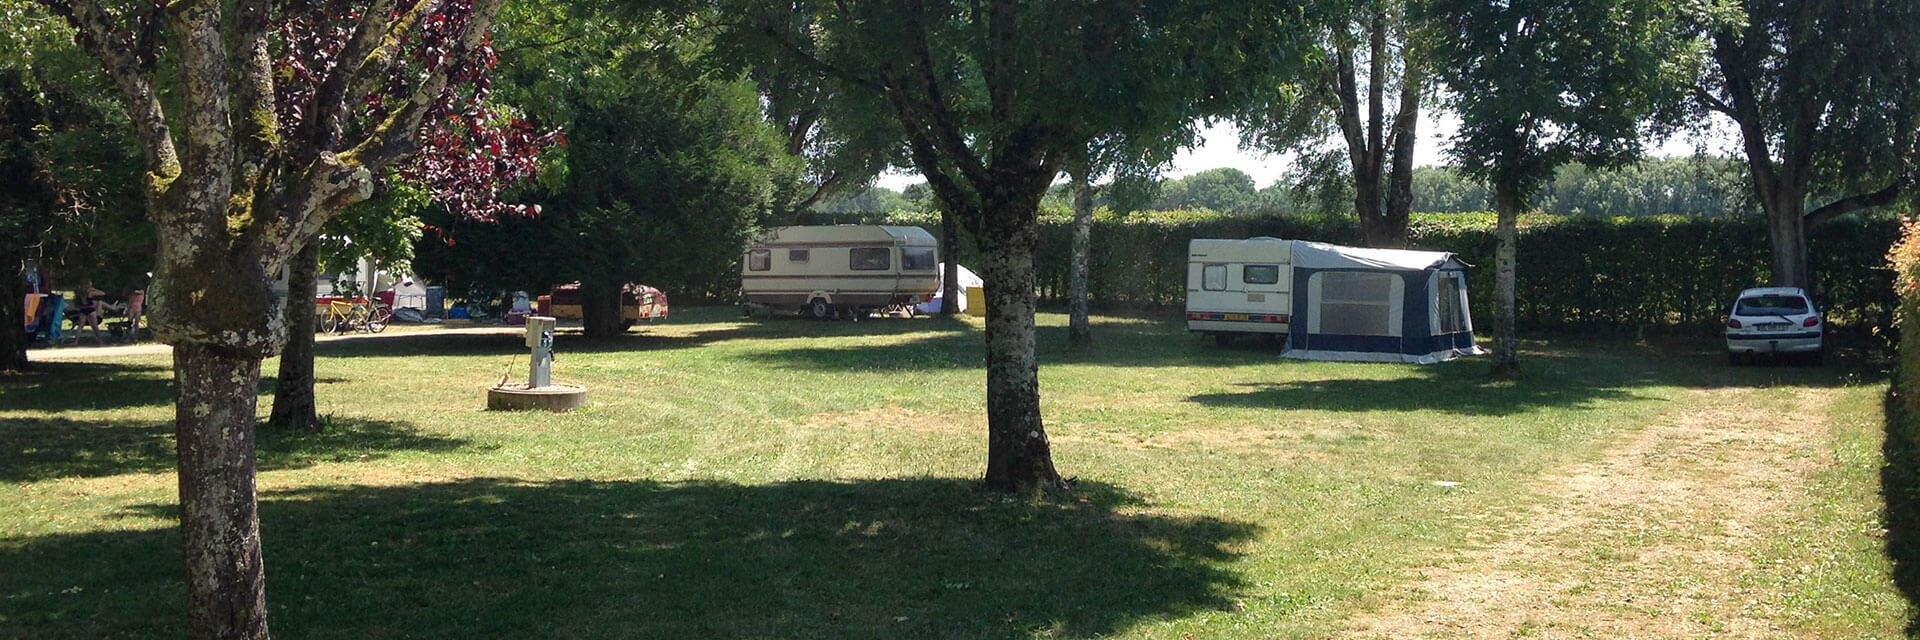 Beschutte staanplaatsen voor campers in Jura